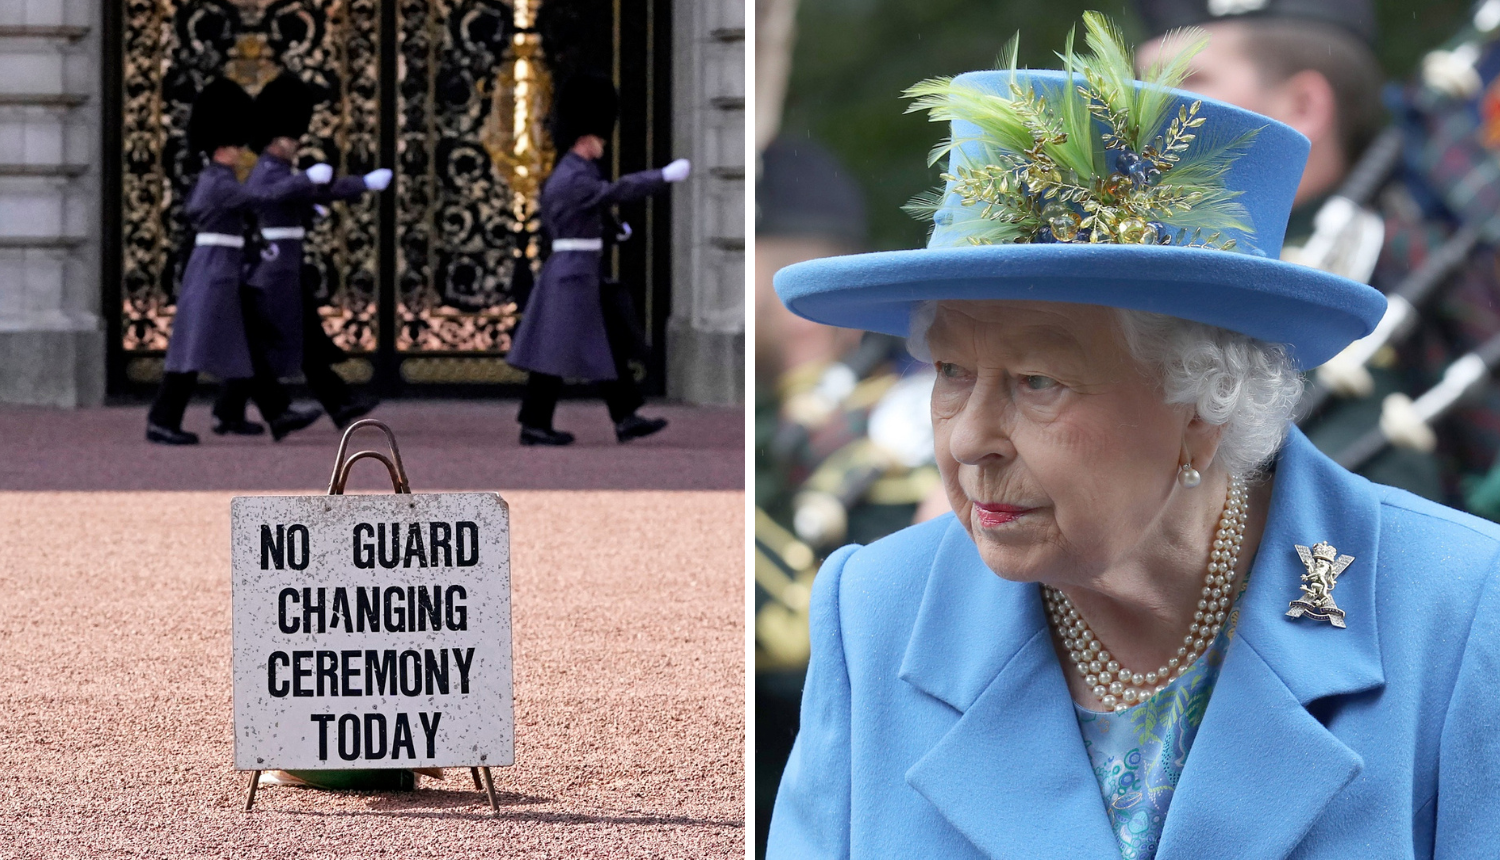 Buckinghamska palača otkazala tradicionalnu smjenu stražara